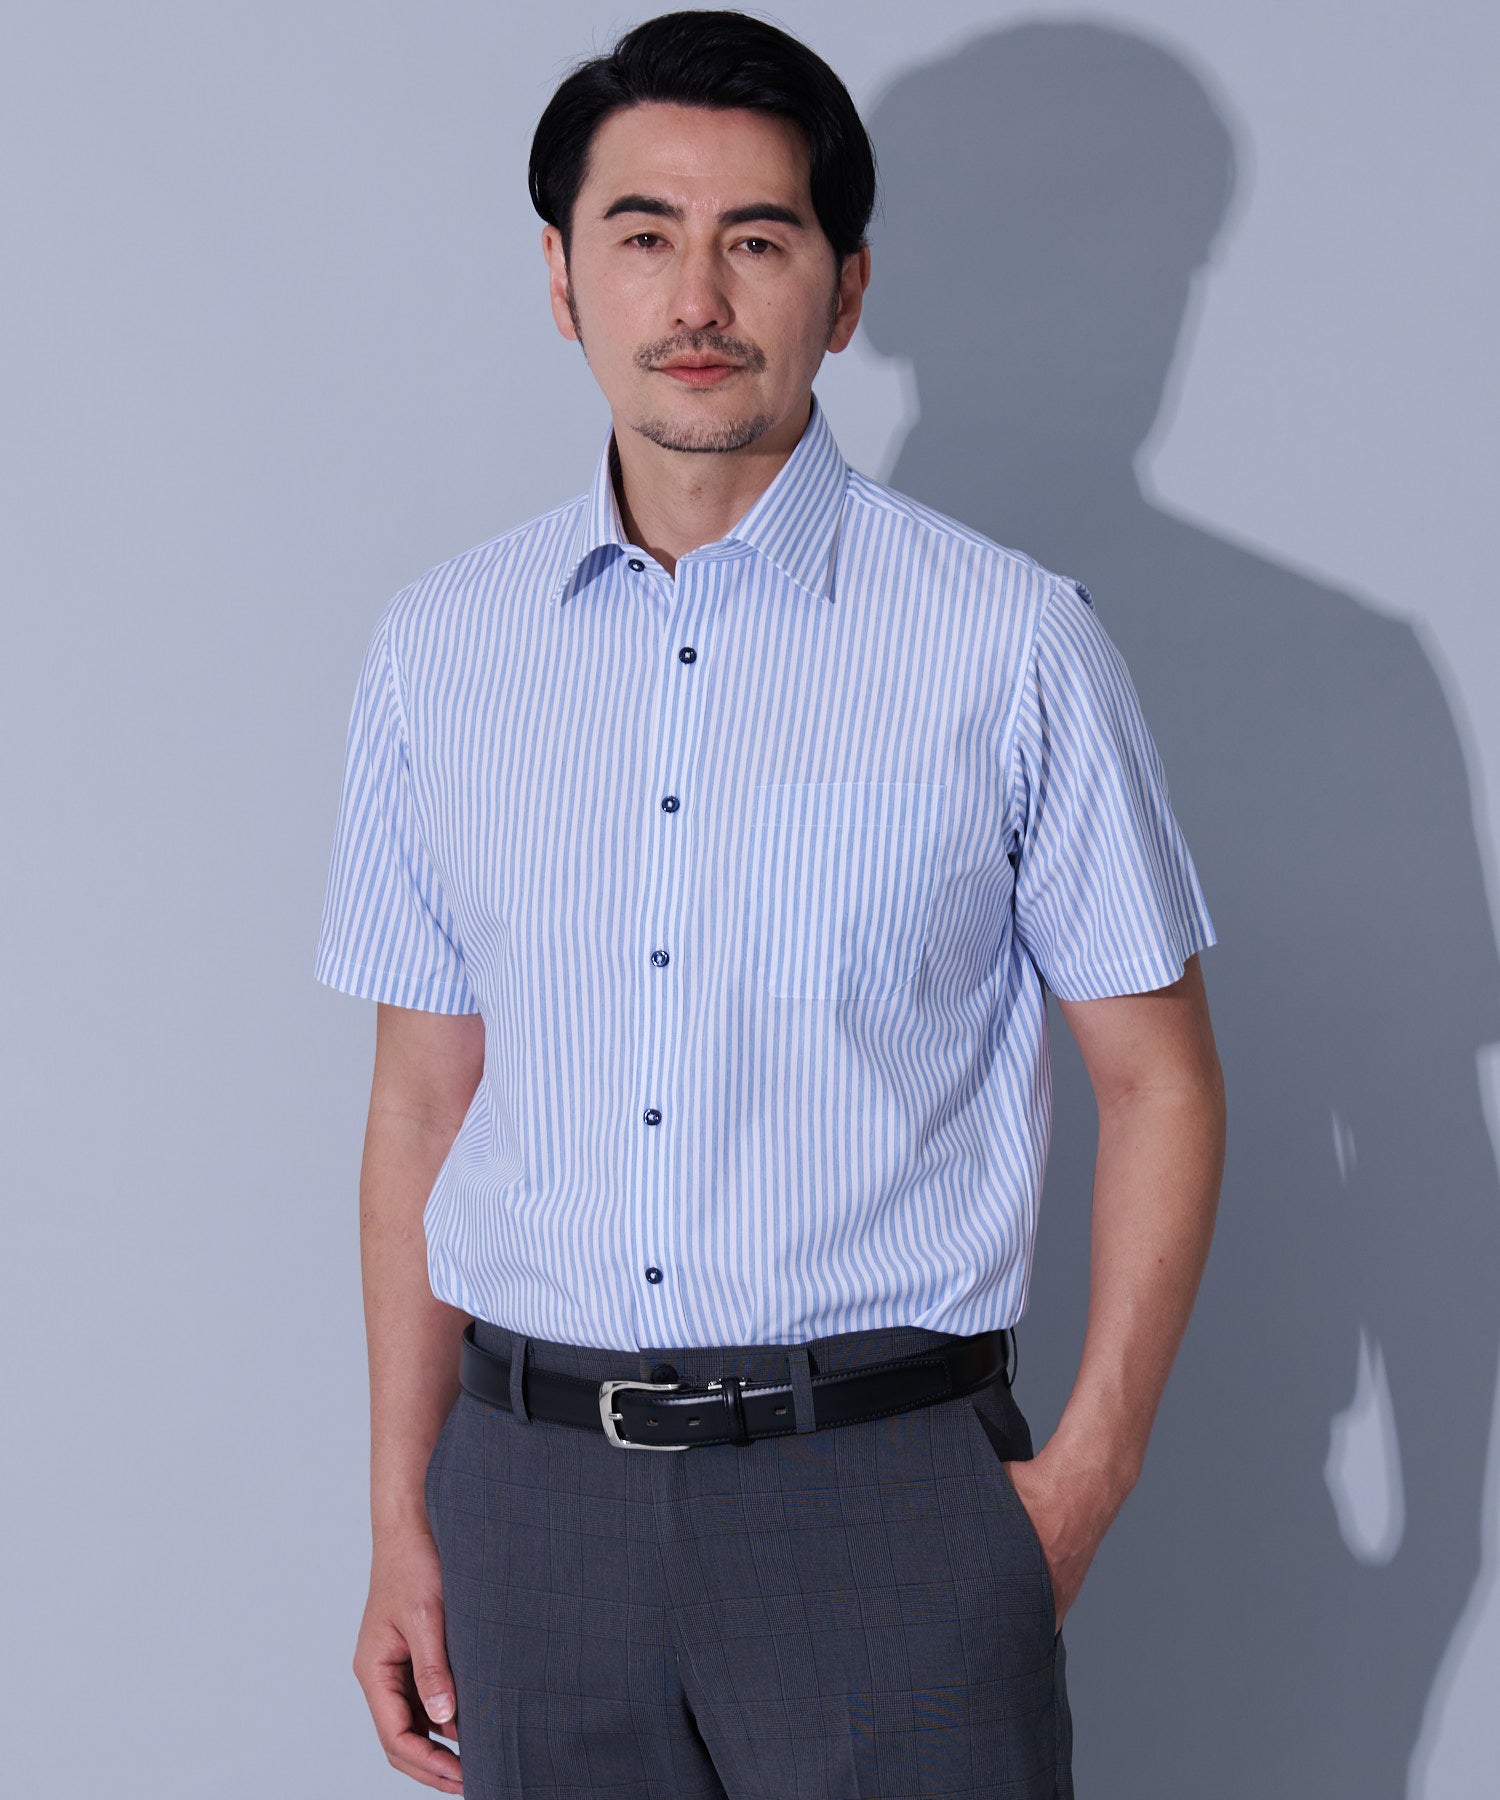 【ホワイト】(M)ワイドカラー 半袖 形態安定 ワイシャツ 綿100%